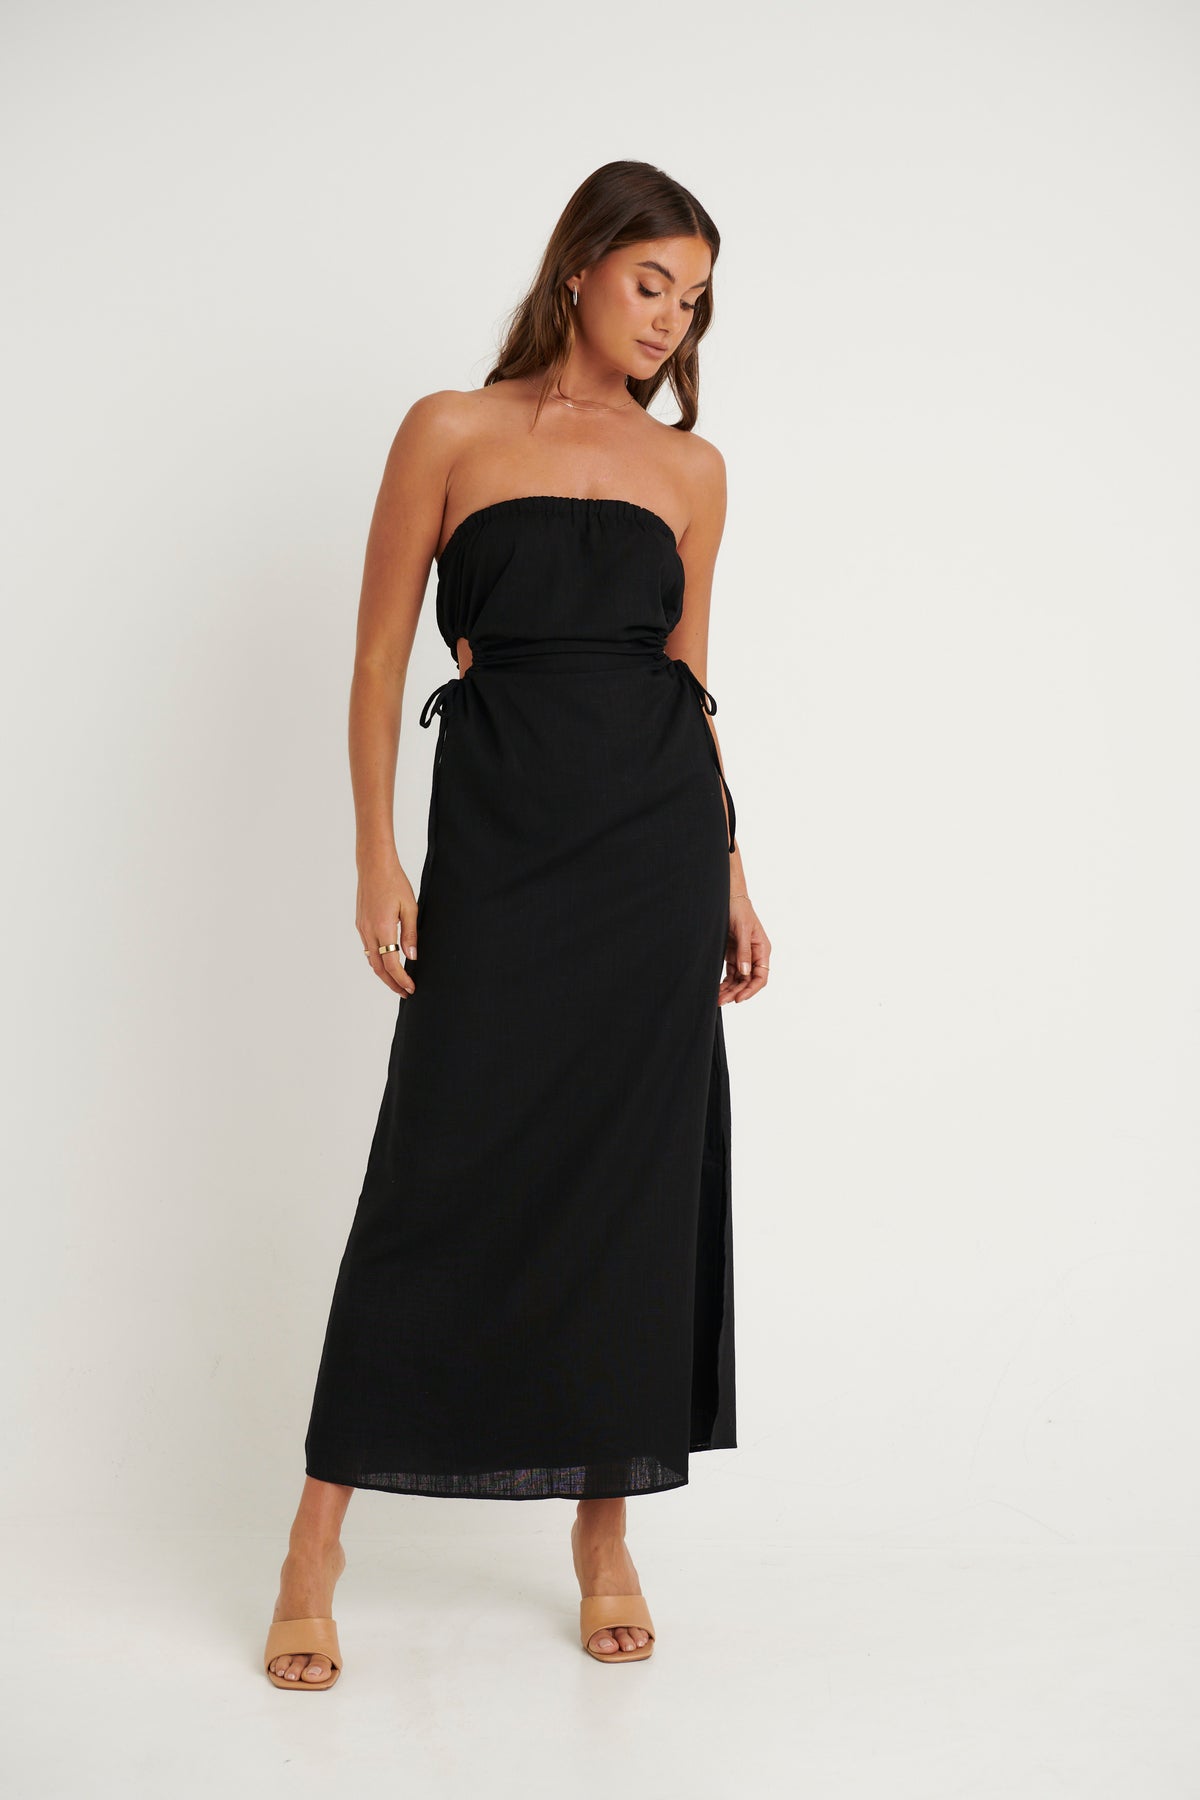 Edie Dress Black - FINAL SALE